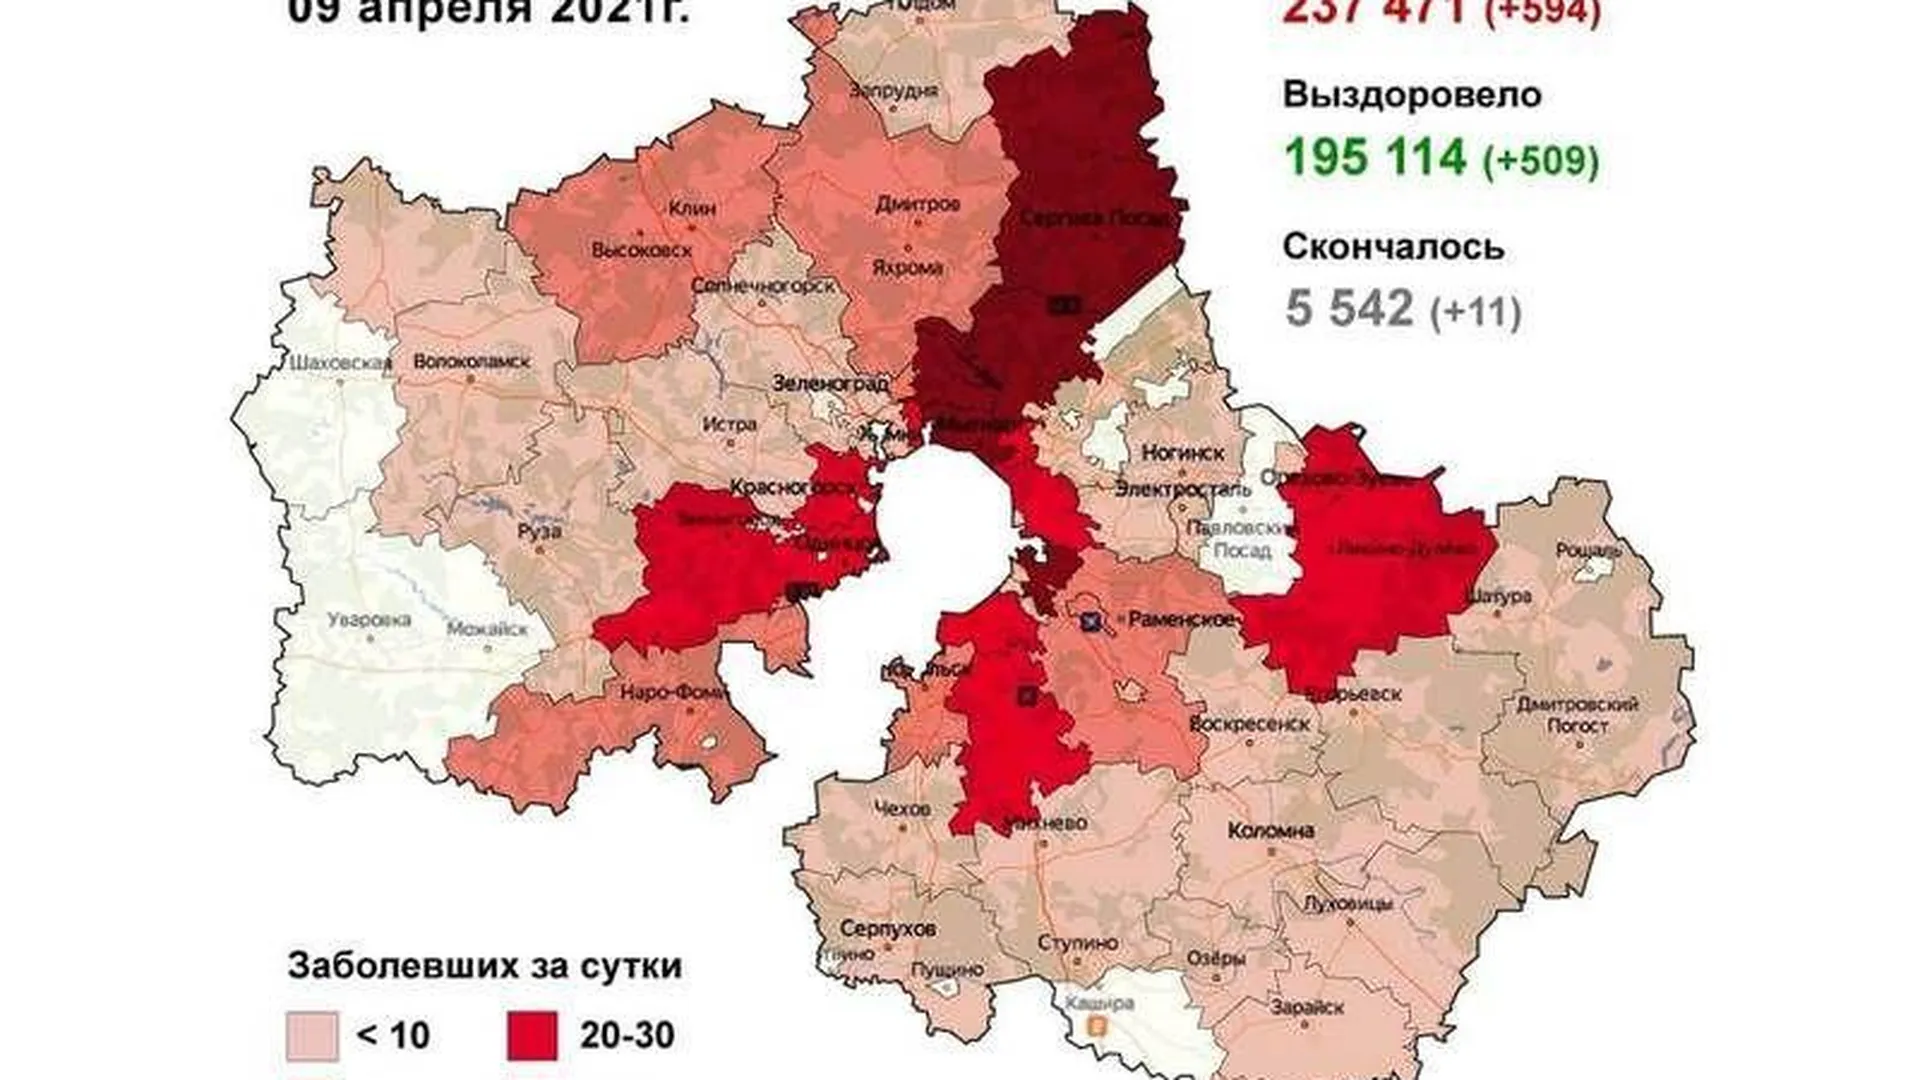 Округа с наибольшим приростом по коронавирусу назвали в Подмосковье